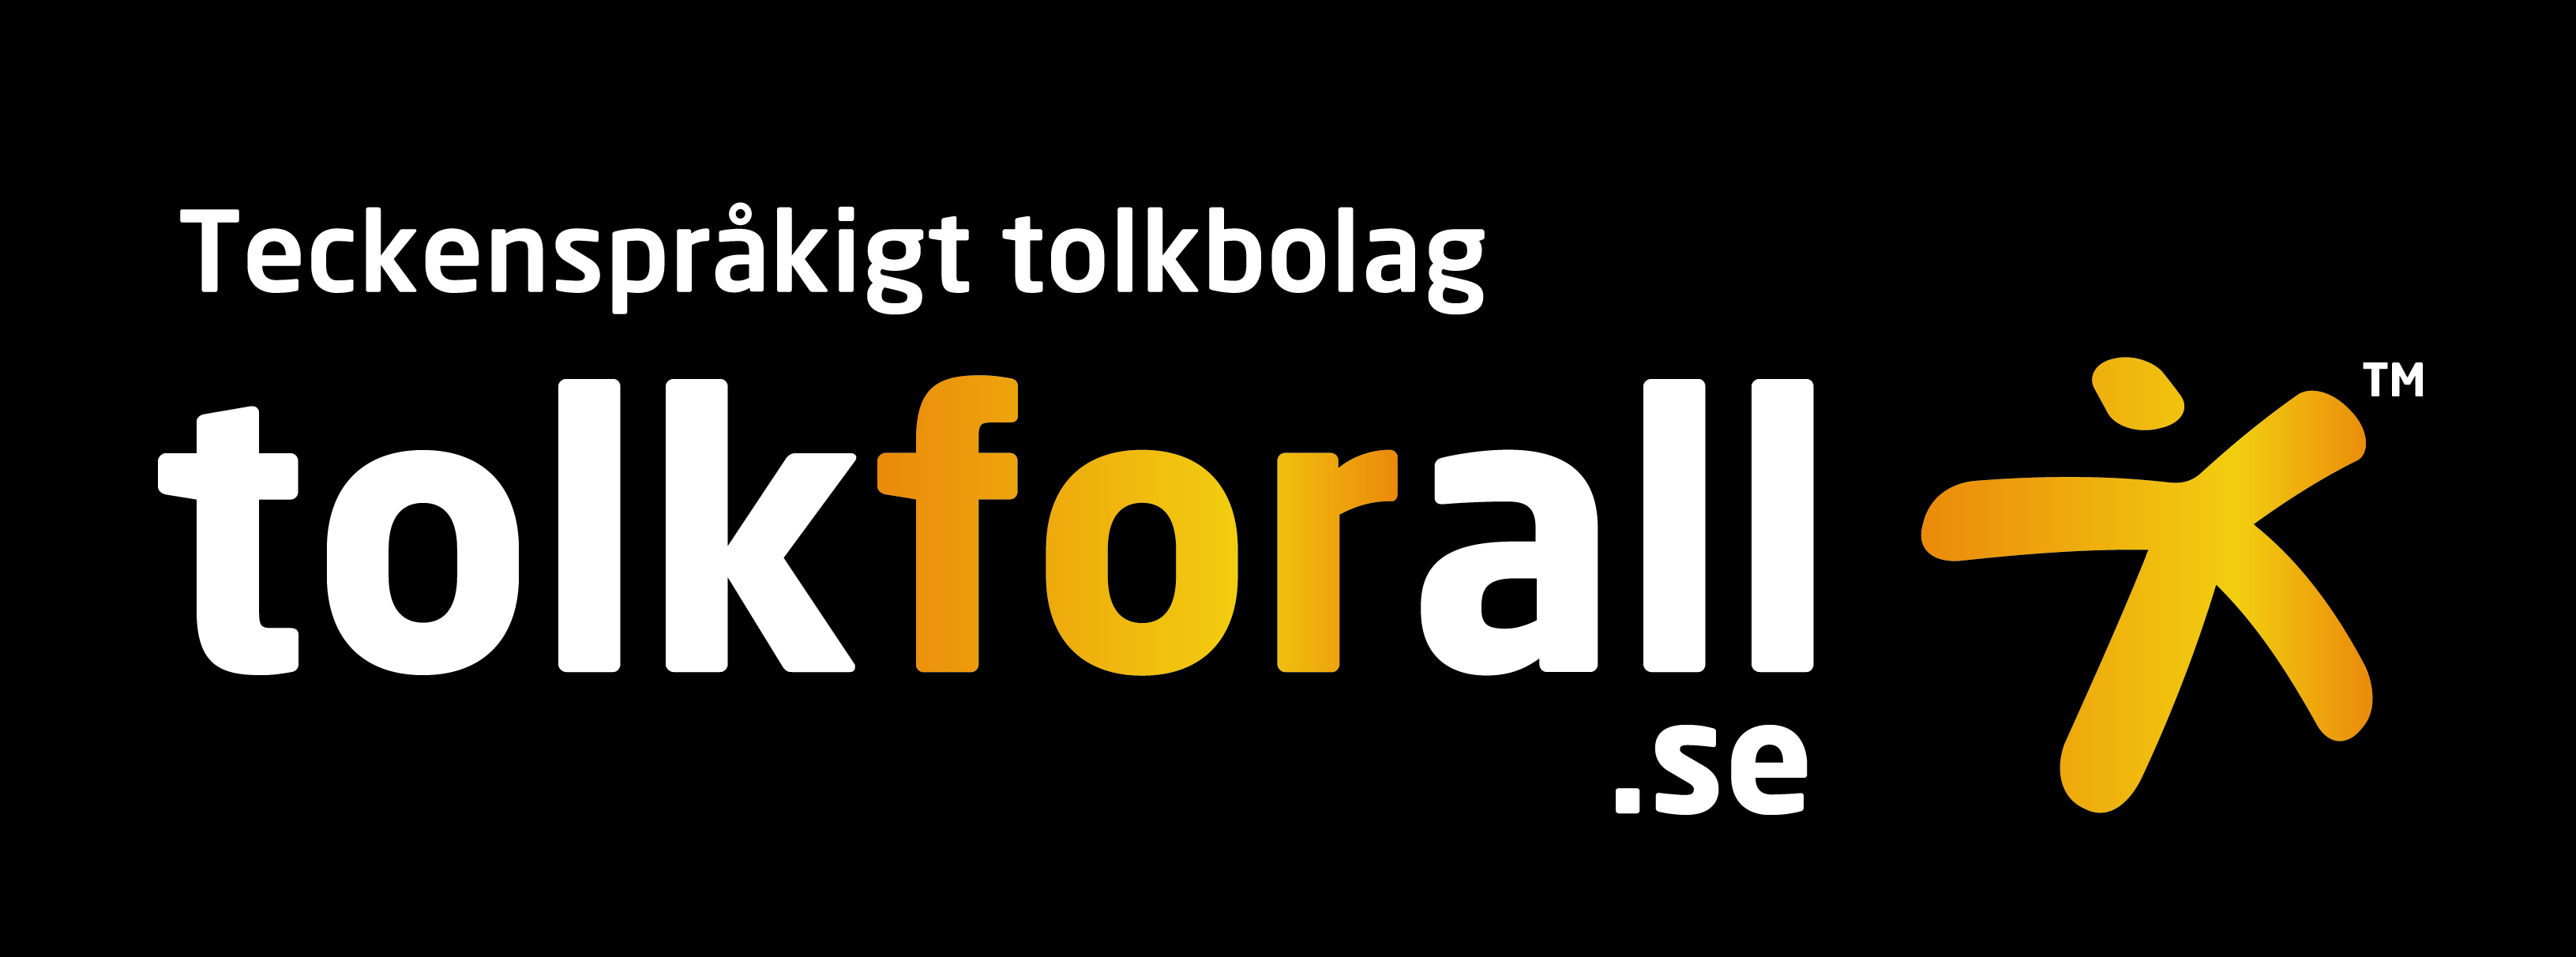 Teckenspråkigt tolkbolag tolkforall.se